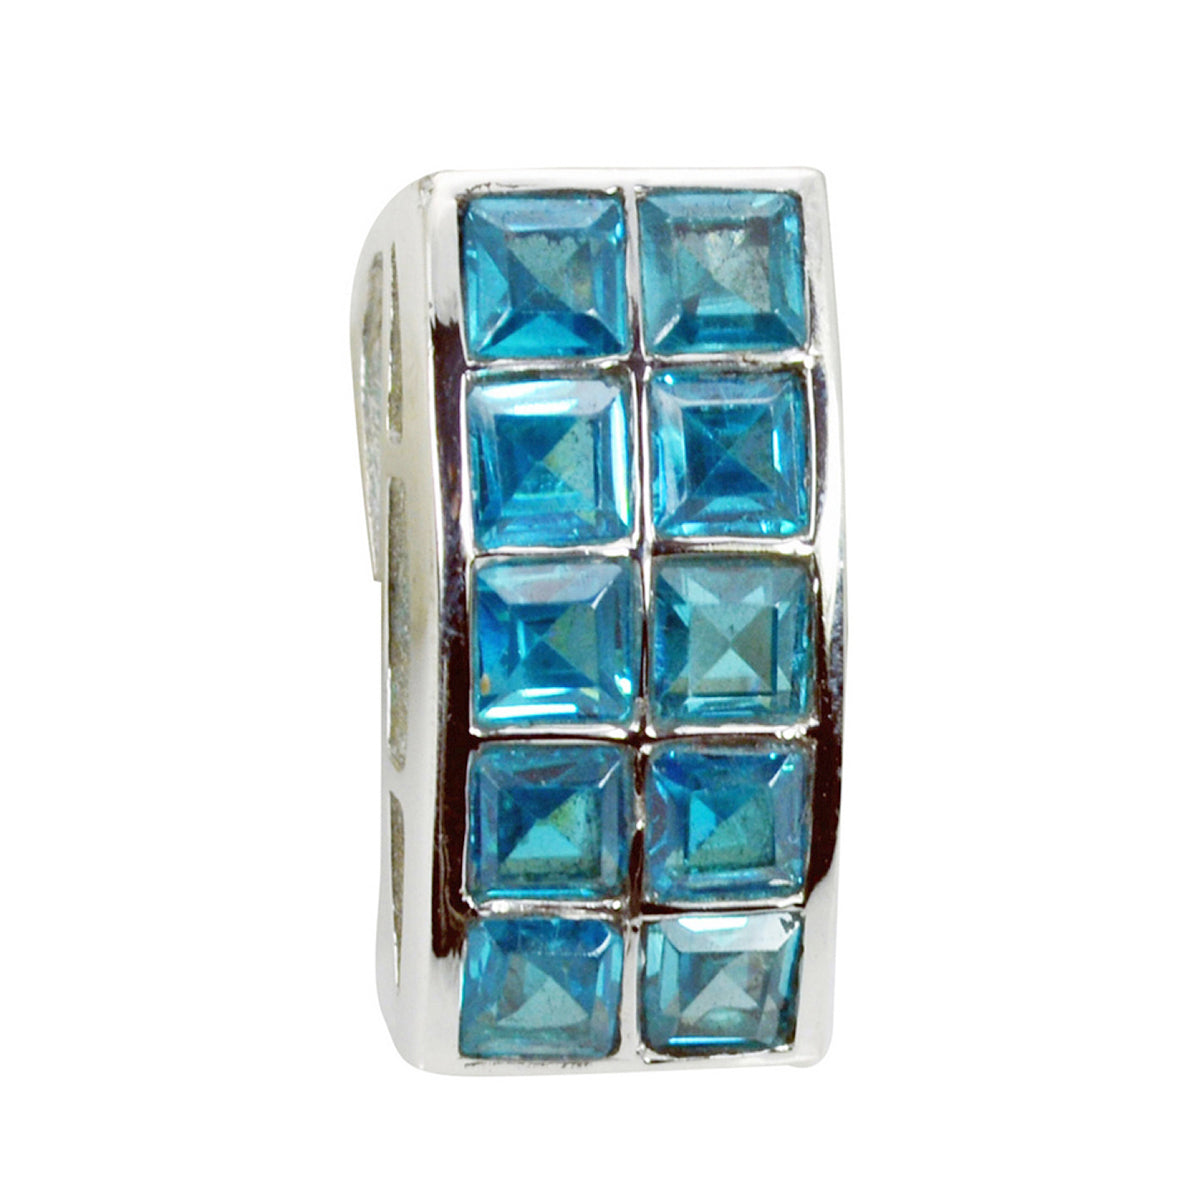 riyo великолепные драгоценные камни квадратный граненый синий голубой топаз твердый серебряный кулон подарок на свадьбу